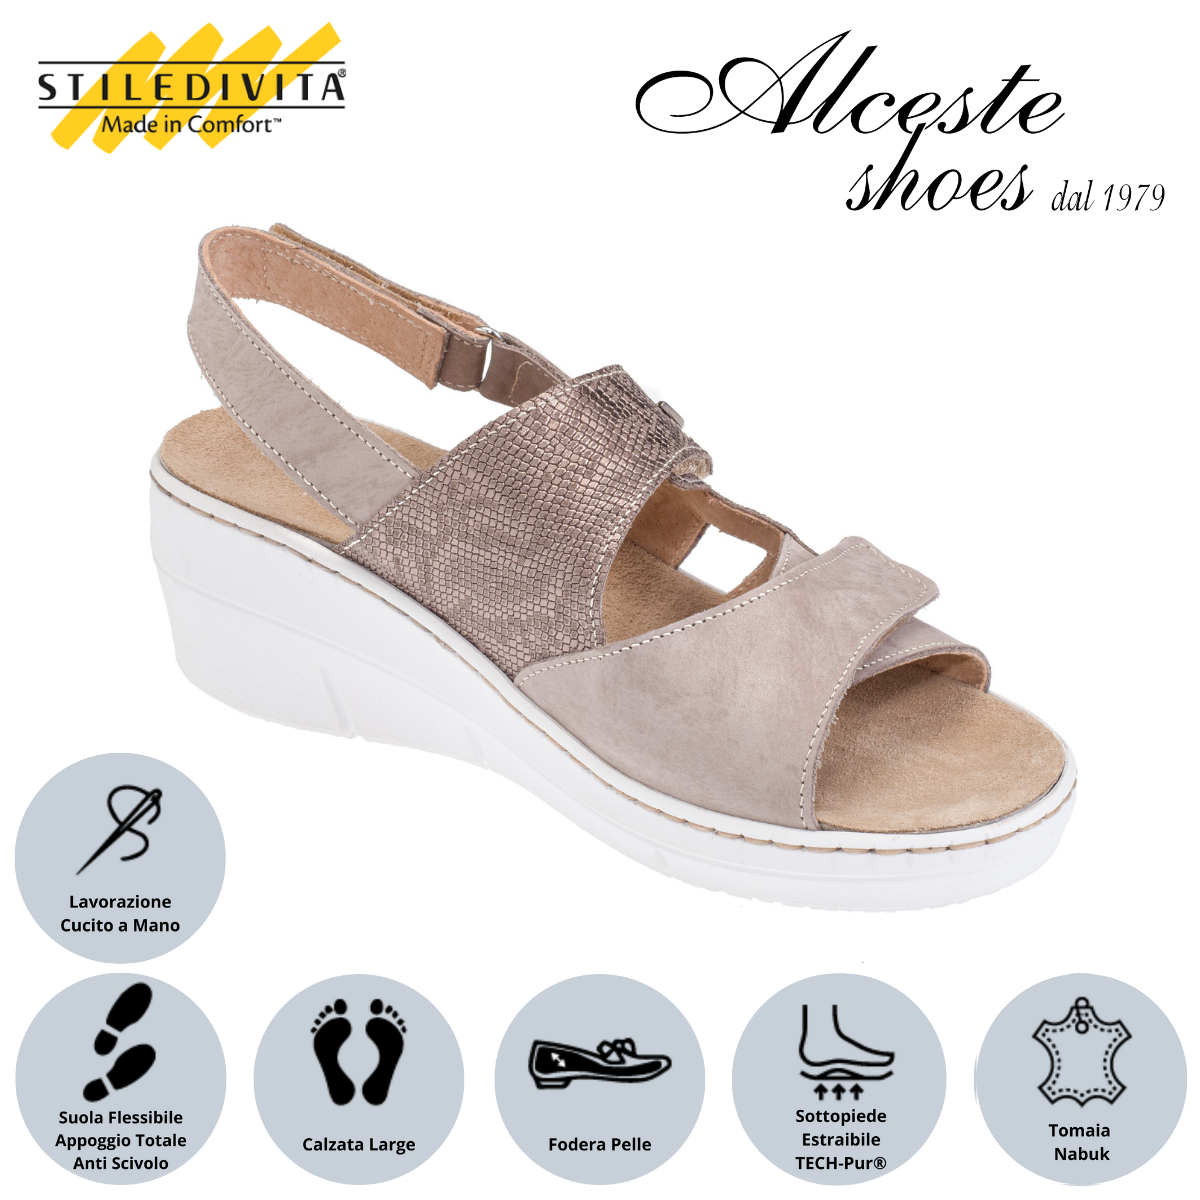 Sandalo con Strappi e Sottopiede Estraibile "Stiledivita" Art. 8526 Pelle Stampata Taupe e Nabuk Avana Alceste Shoes 54